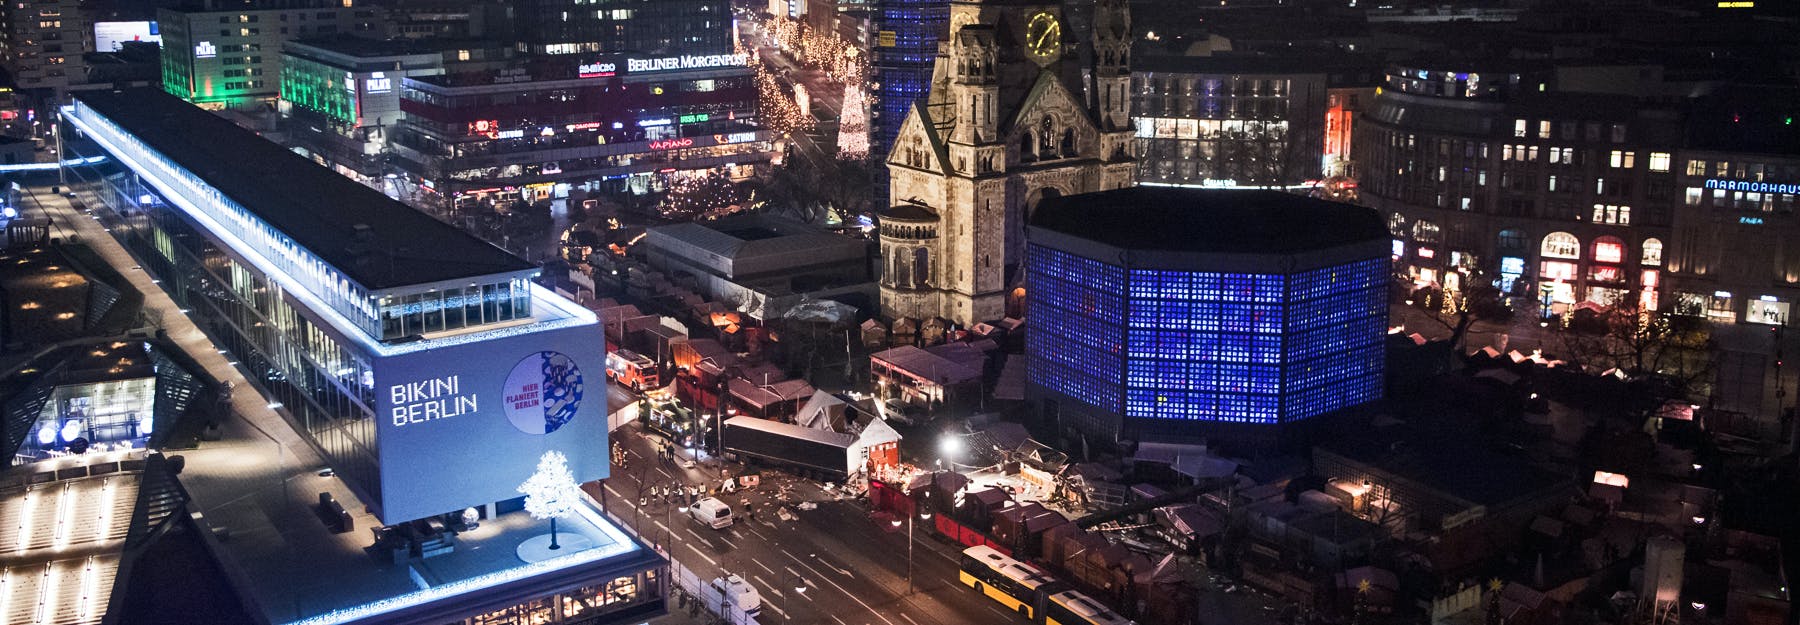 Nach Anschlag von Berlin: 5 Dinge, die wir jetzt nicht brauchen